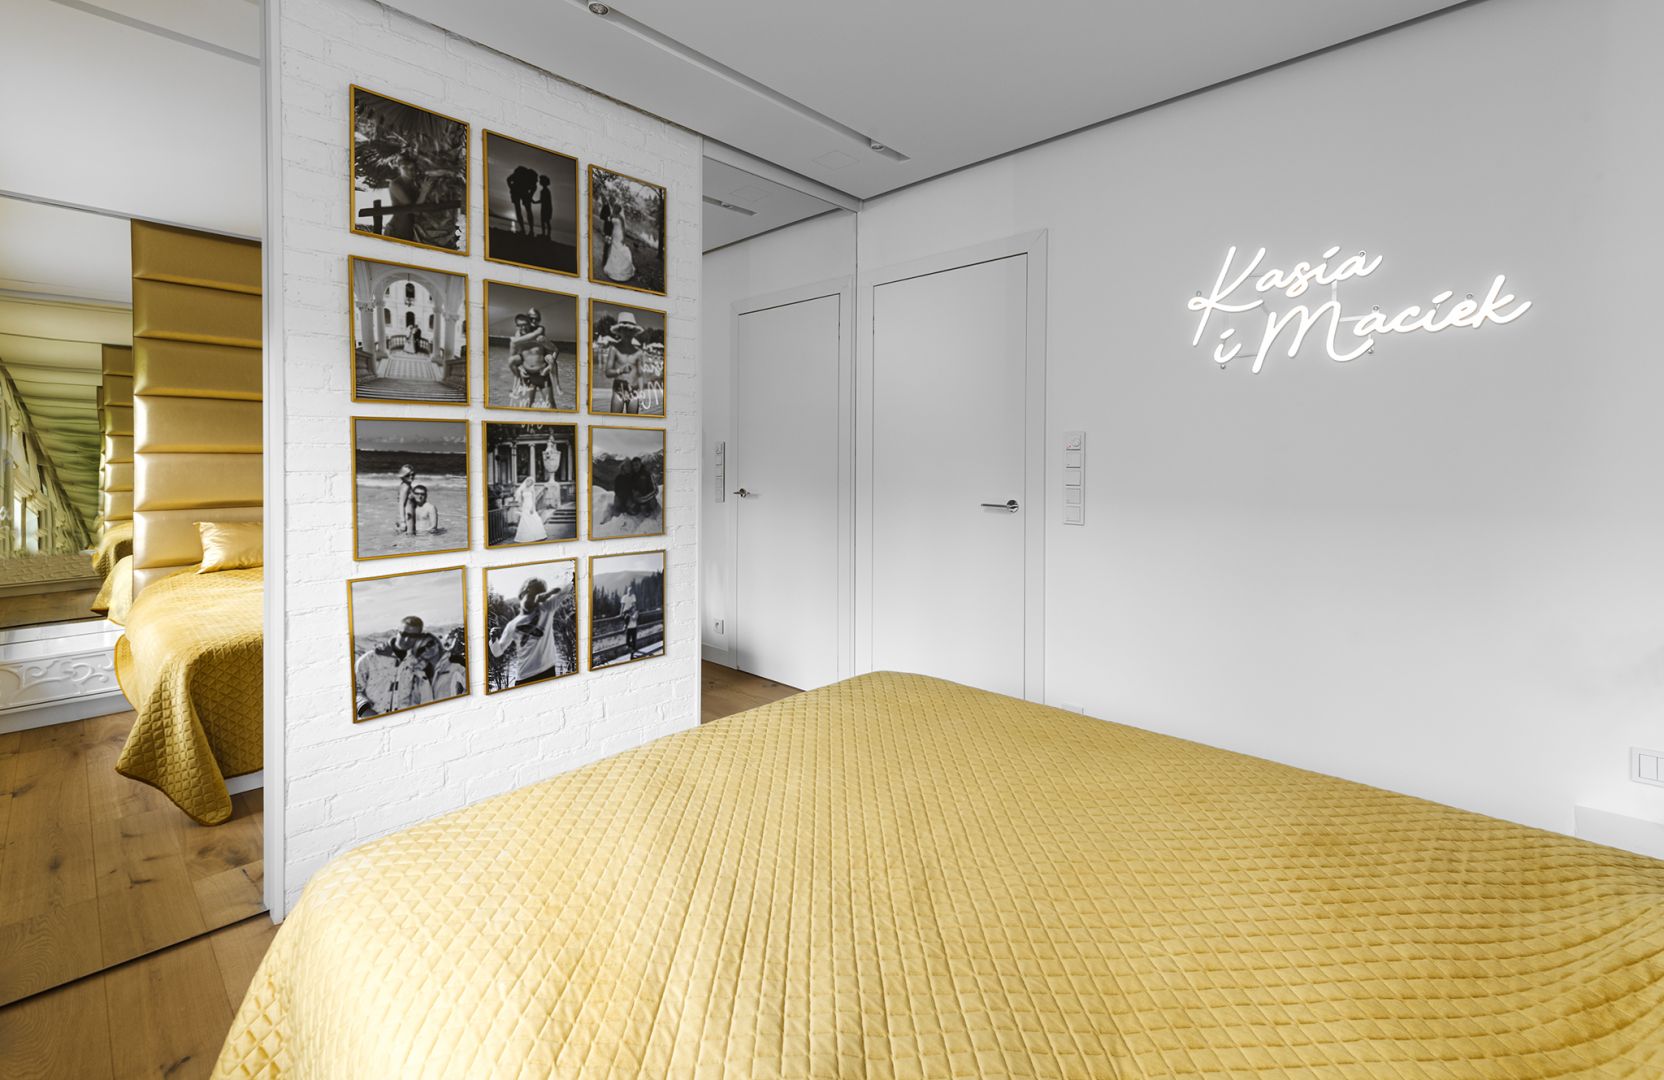 Duże lustra optycznie powiększają przestrzeń sypialni. Projekt: Dariusz Grabowski, Dagar Studio. Fot. Mateusz Pawelski